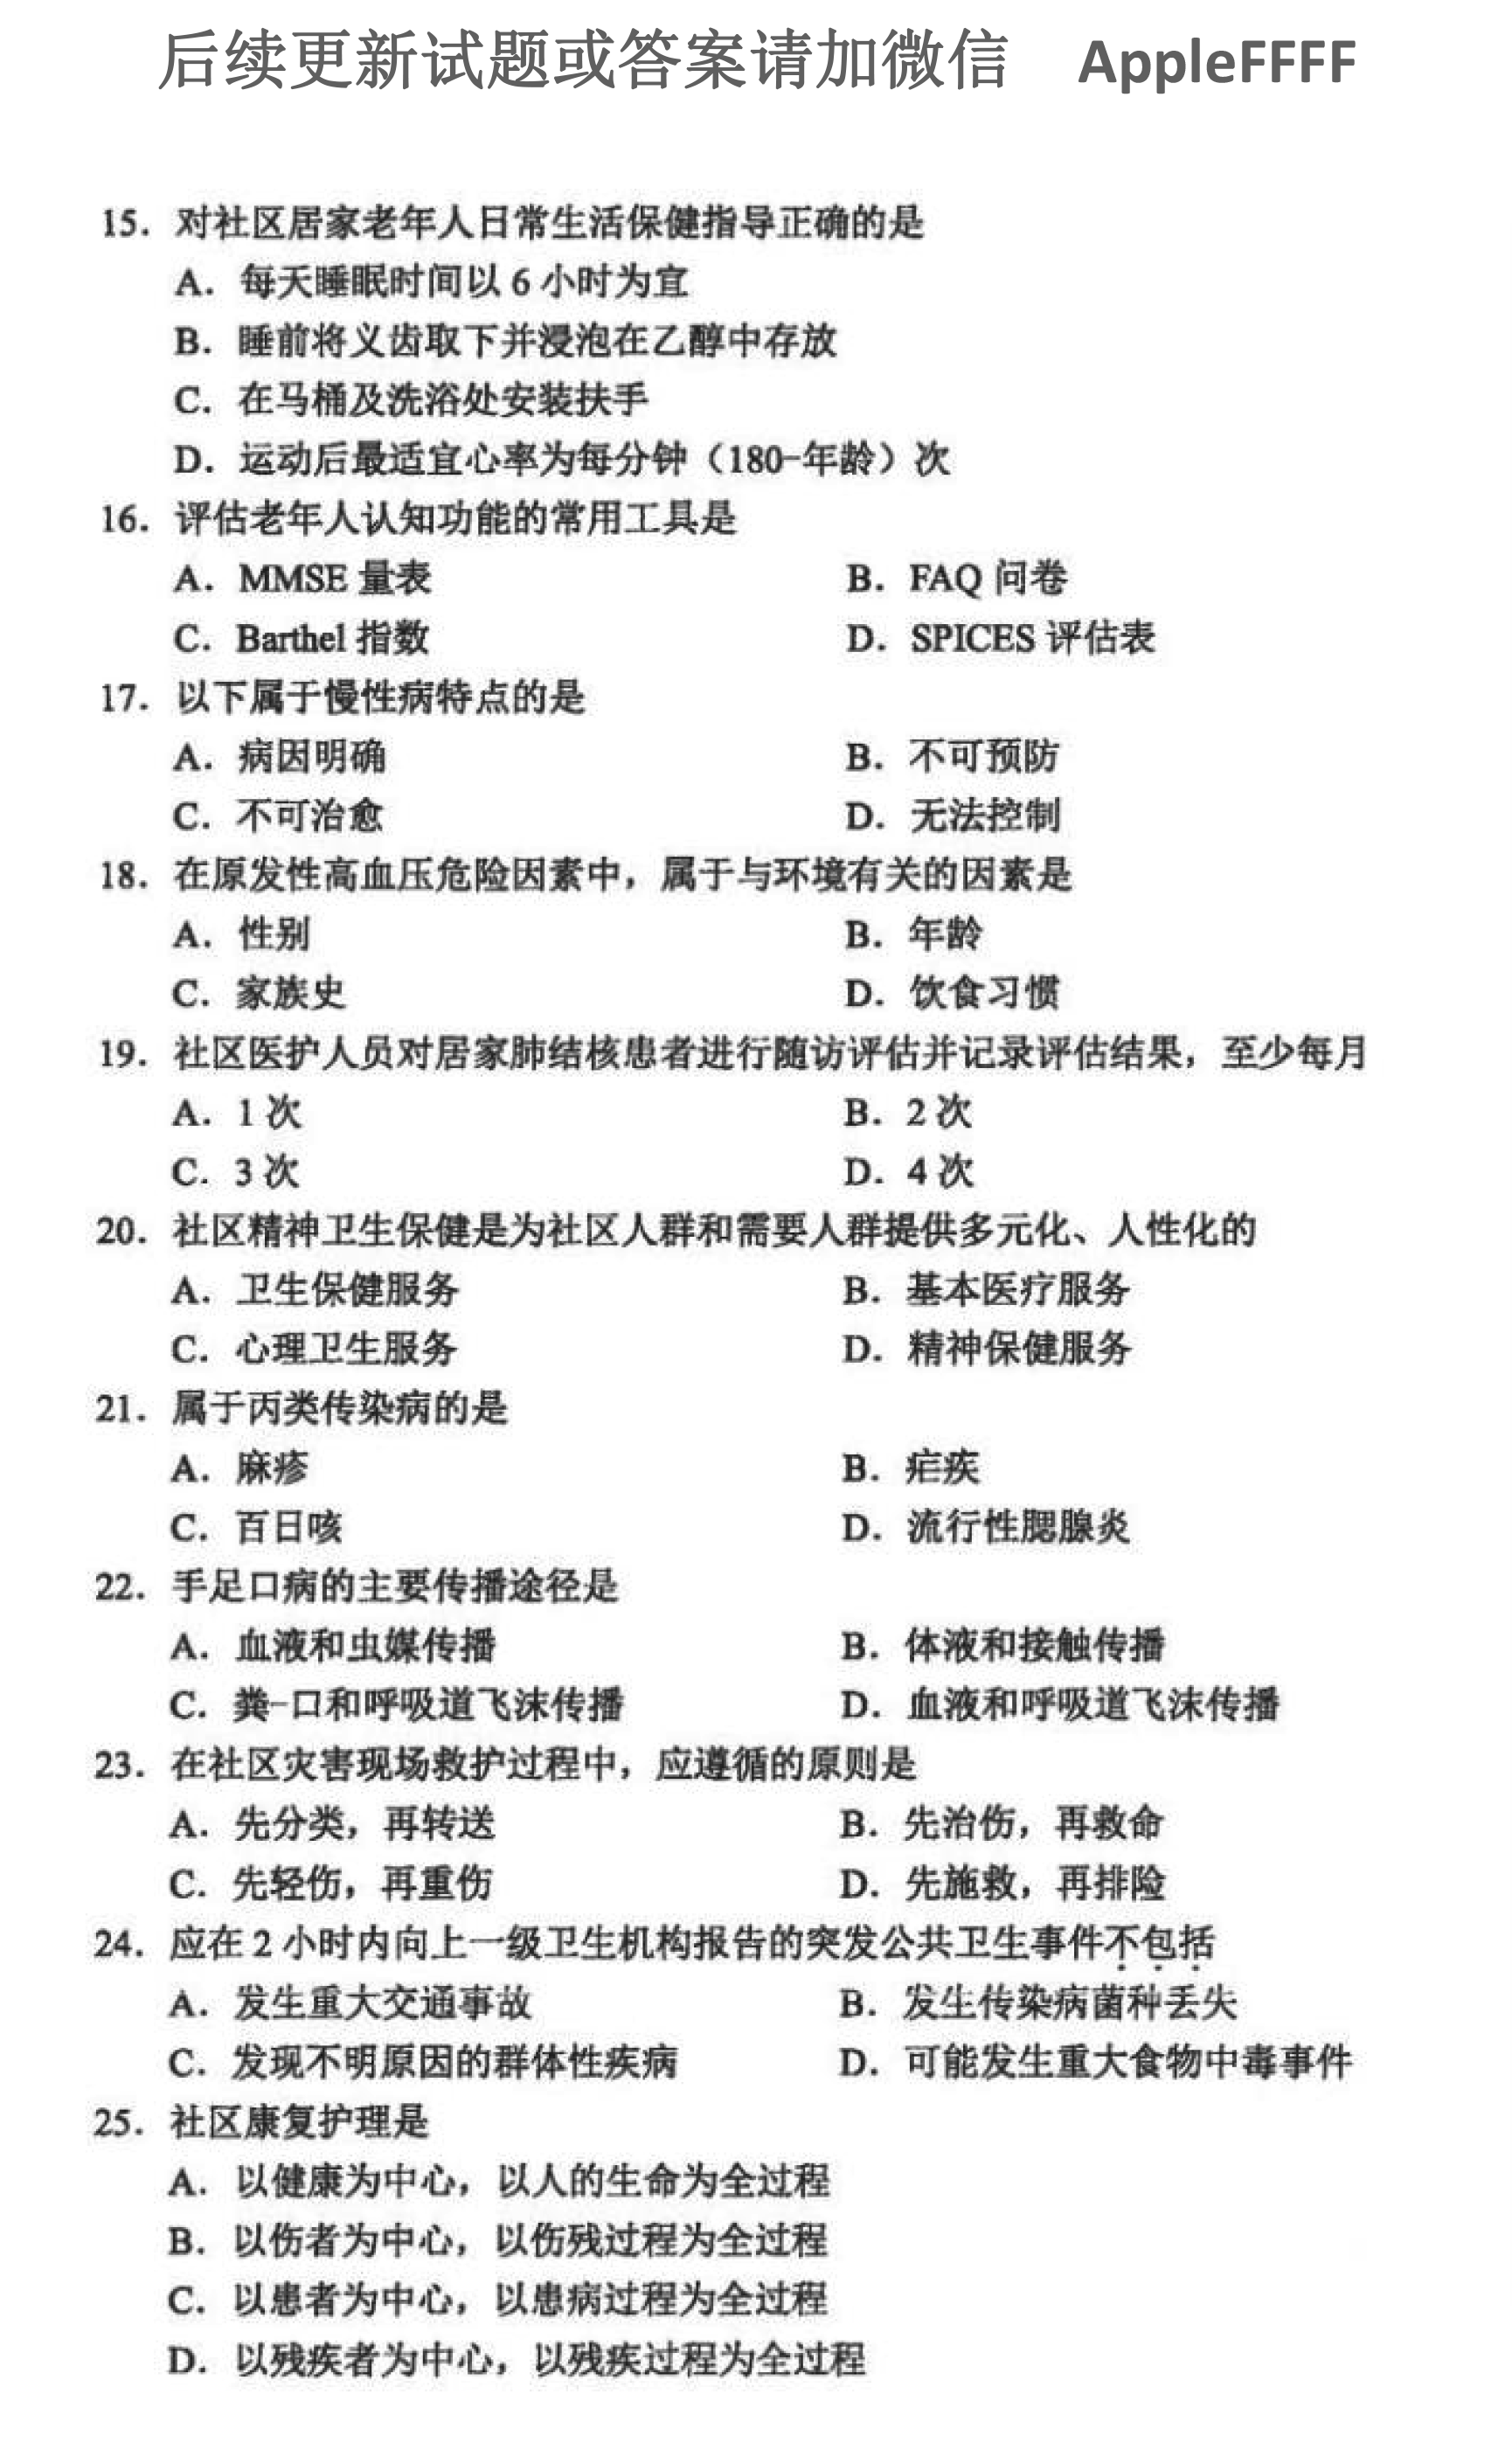 贵州省2021年10月自学考试03004社区护理学一试题及答案